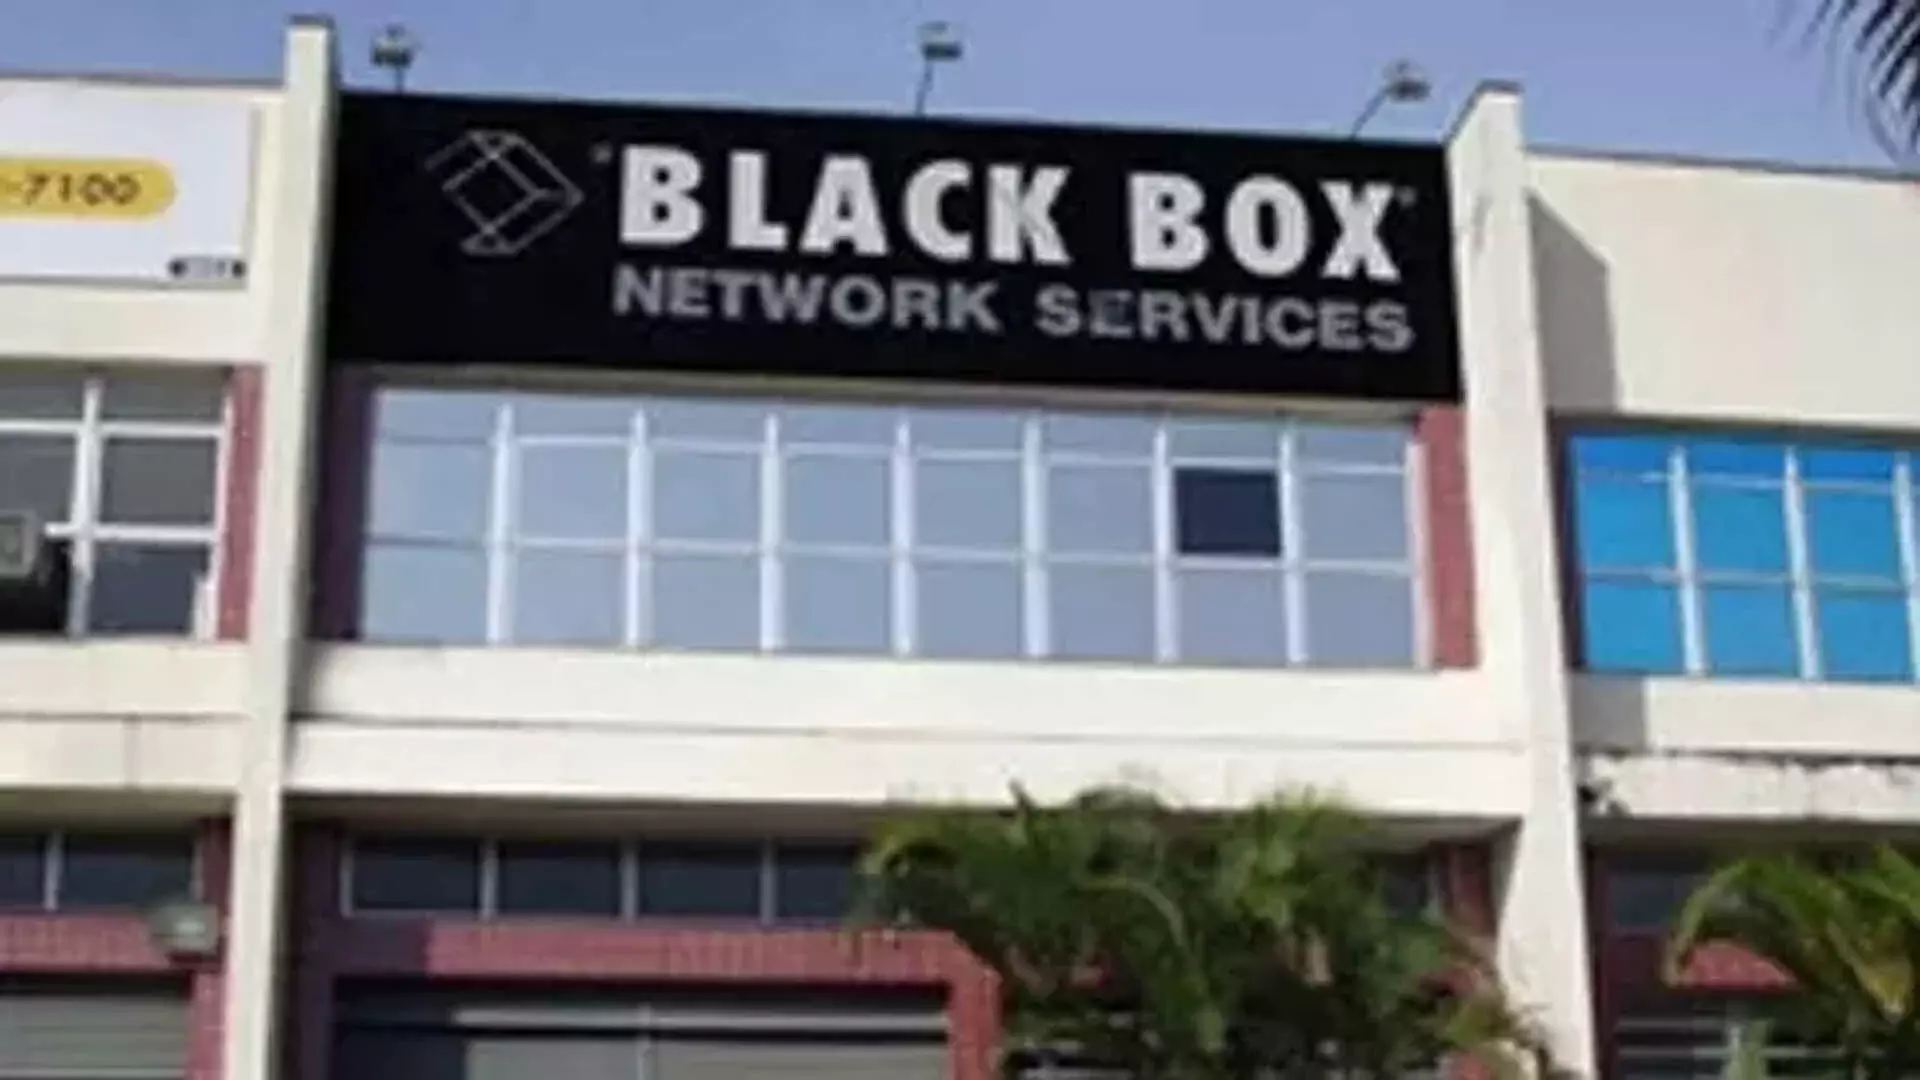 Essar की IT कंपनी ब्लैक बॉक्स प्रेफरेंशियल इश्यू के जरिए 410 करोड़ रुपये जुटाएगी